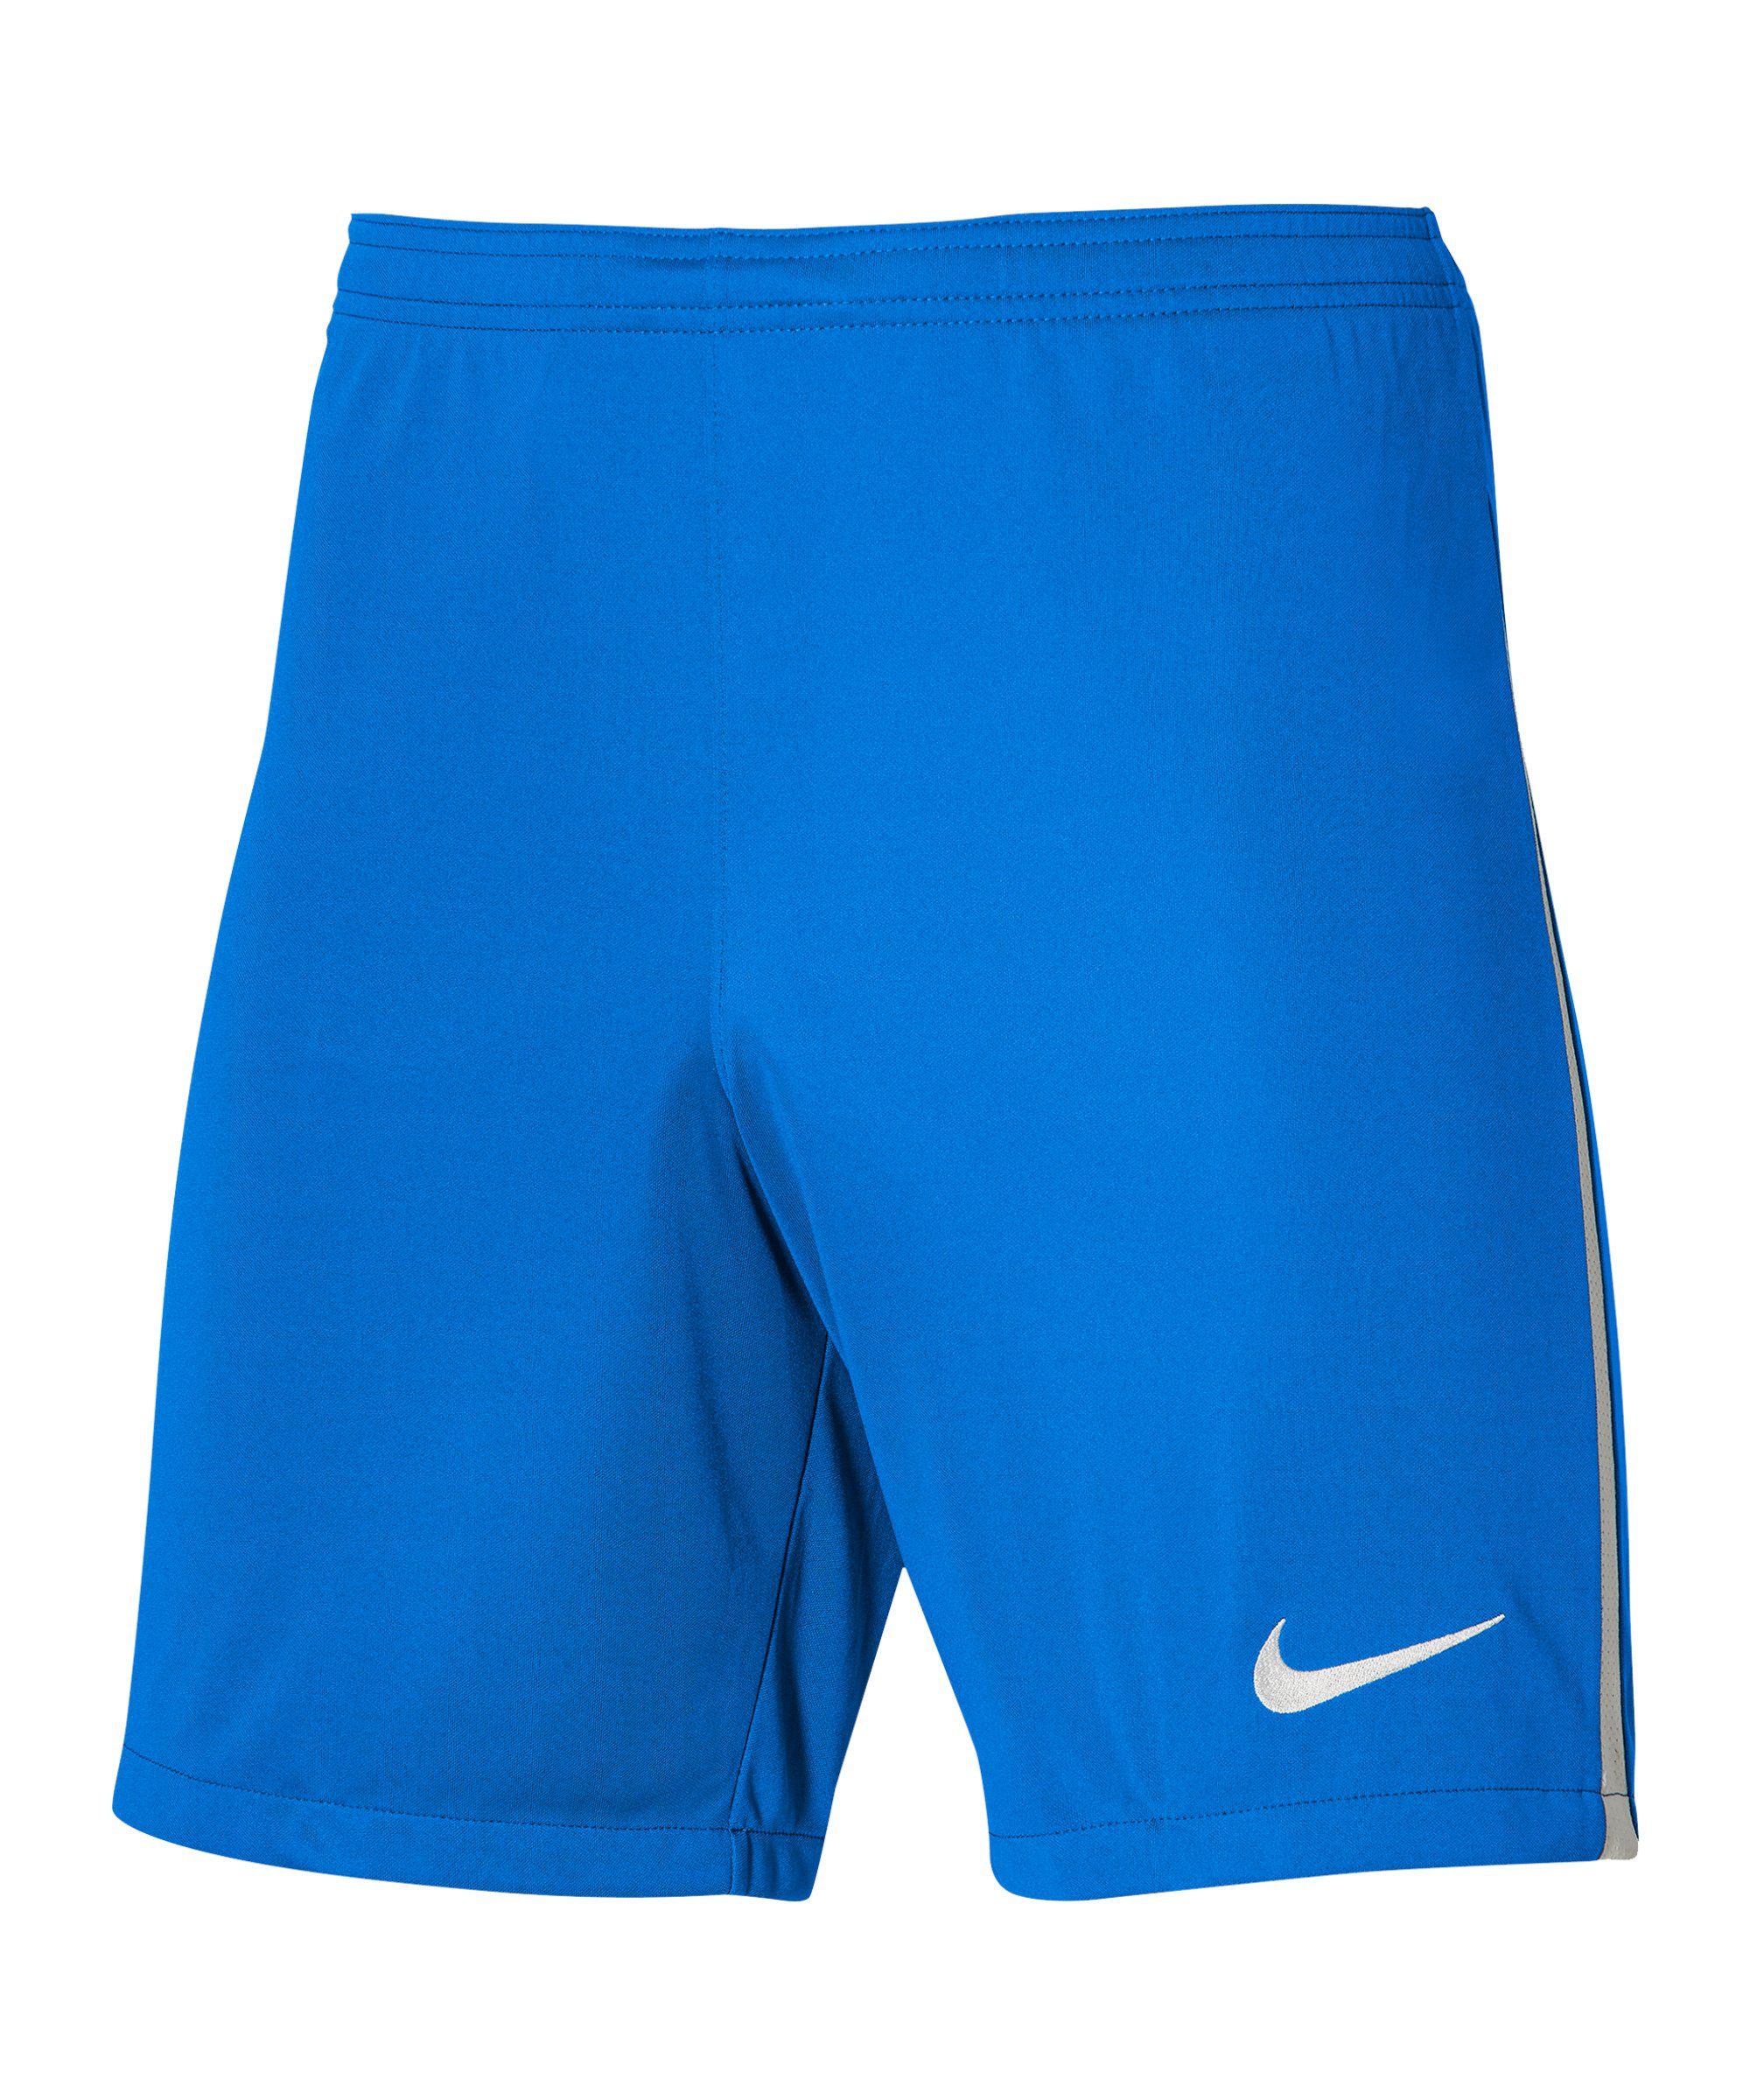 Kids III League Nike Short Sporthose dunkelblauweissweiss